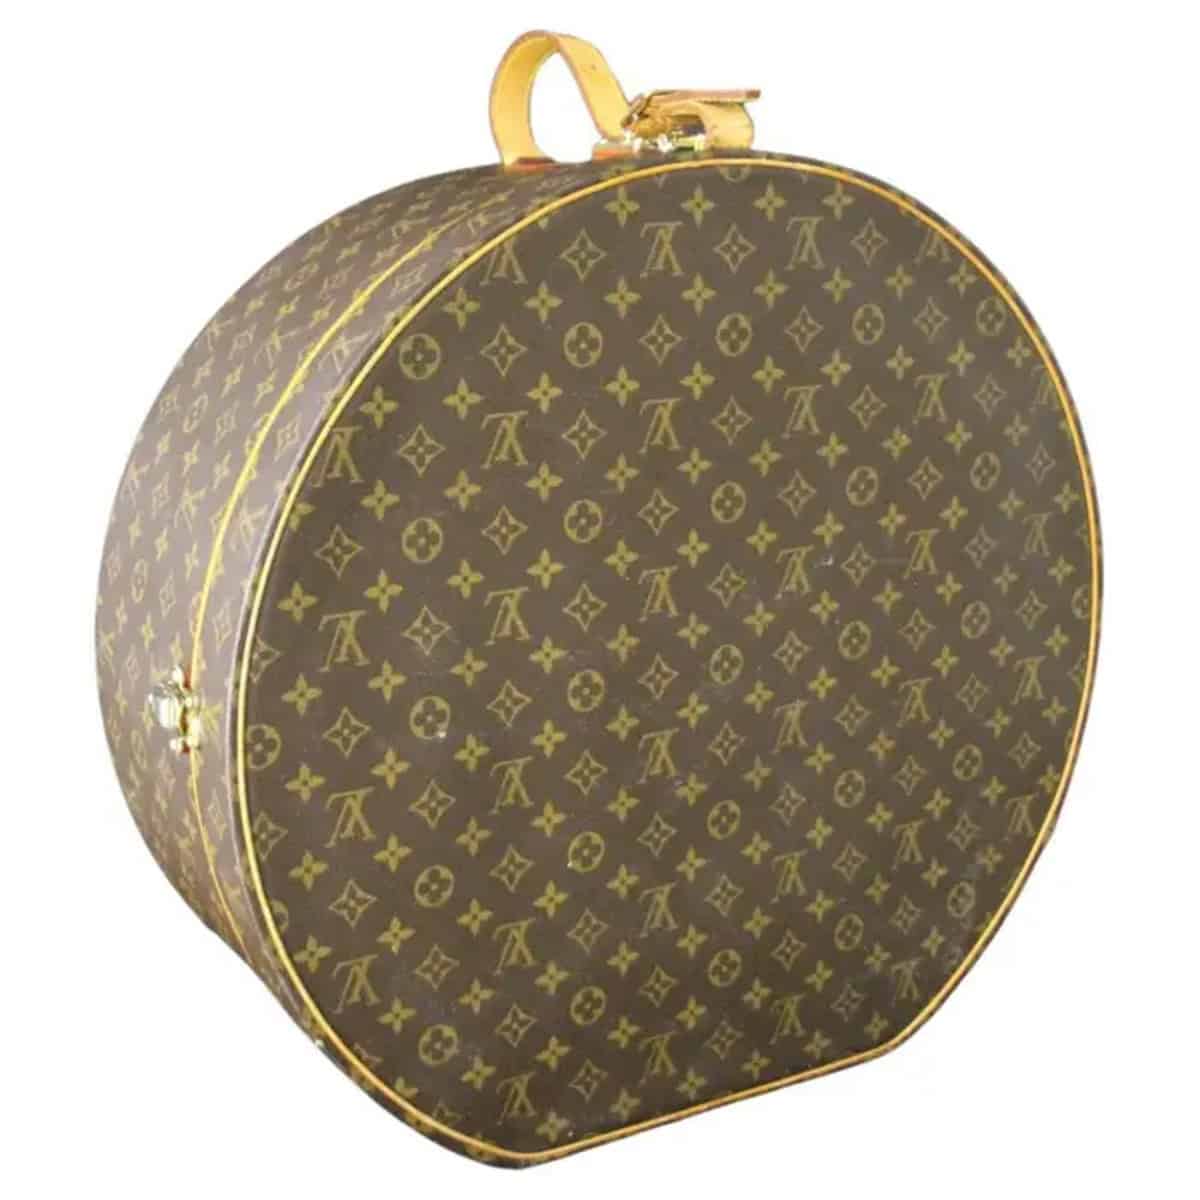 Louis Vuitton round hat box 50 cm, Vuitton round hat box 50